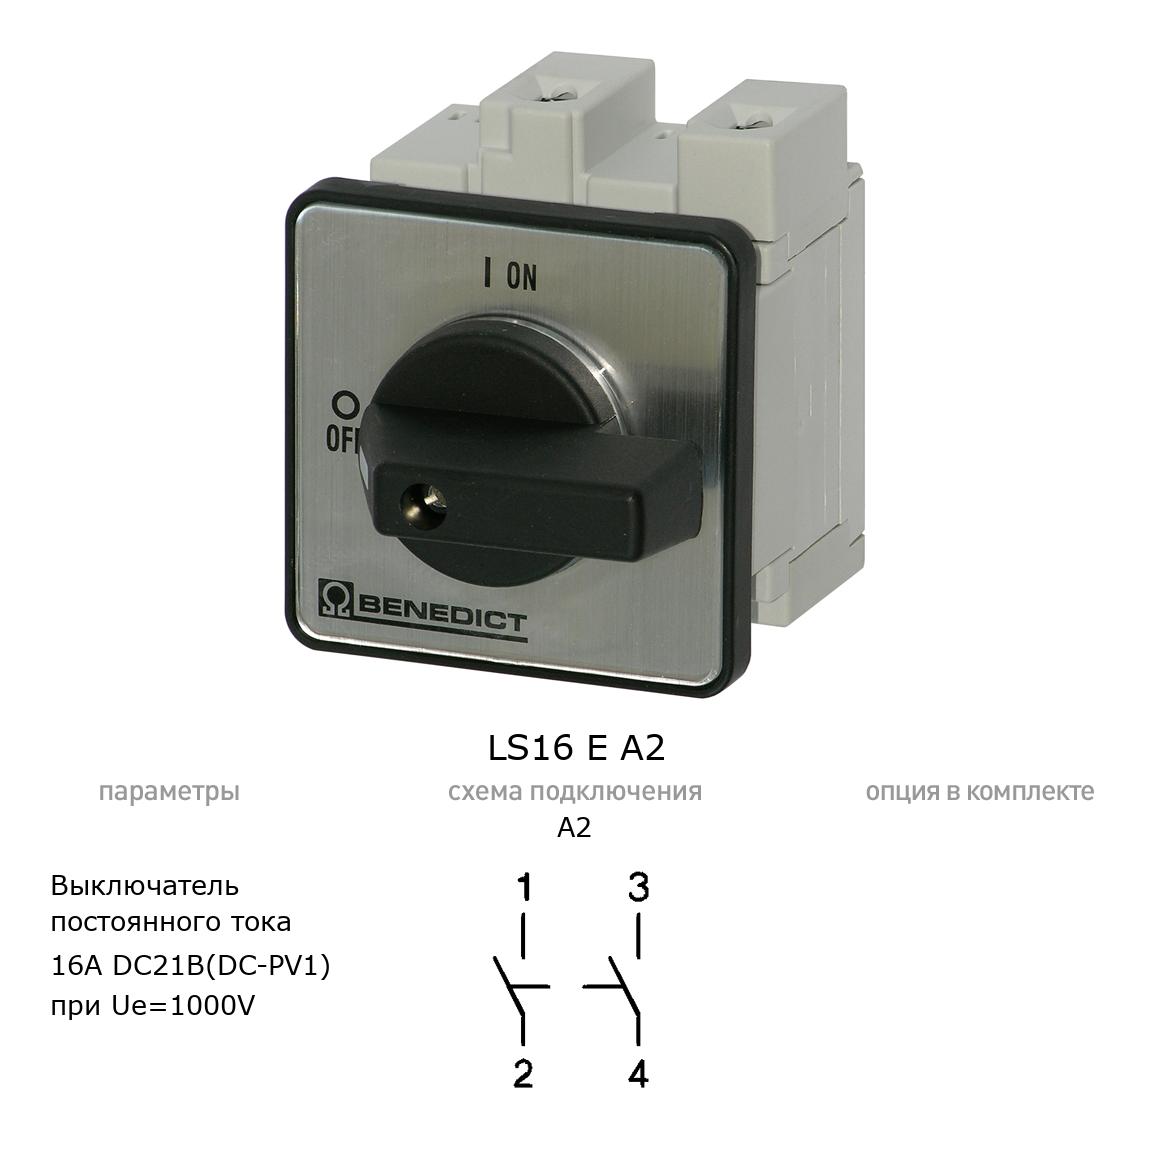 Кулачковый переключатель для постоянного тока (DC) LS16 E A2 BENEDICT